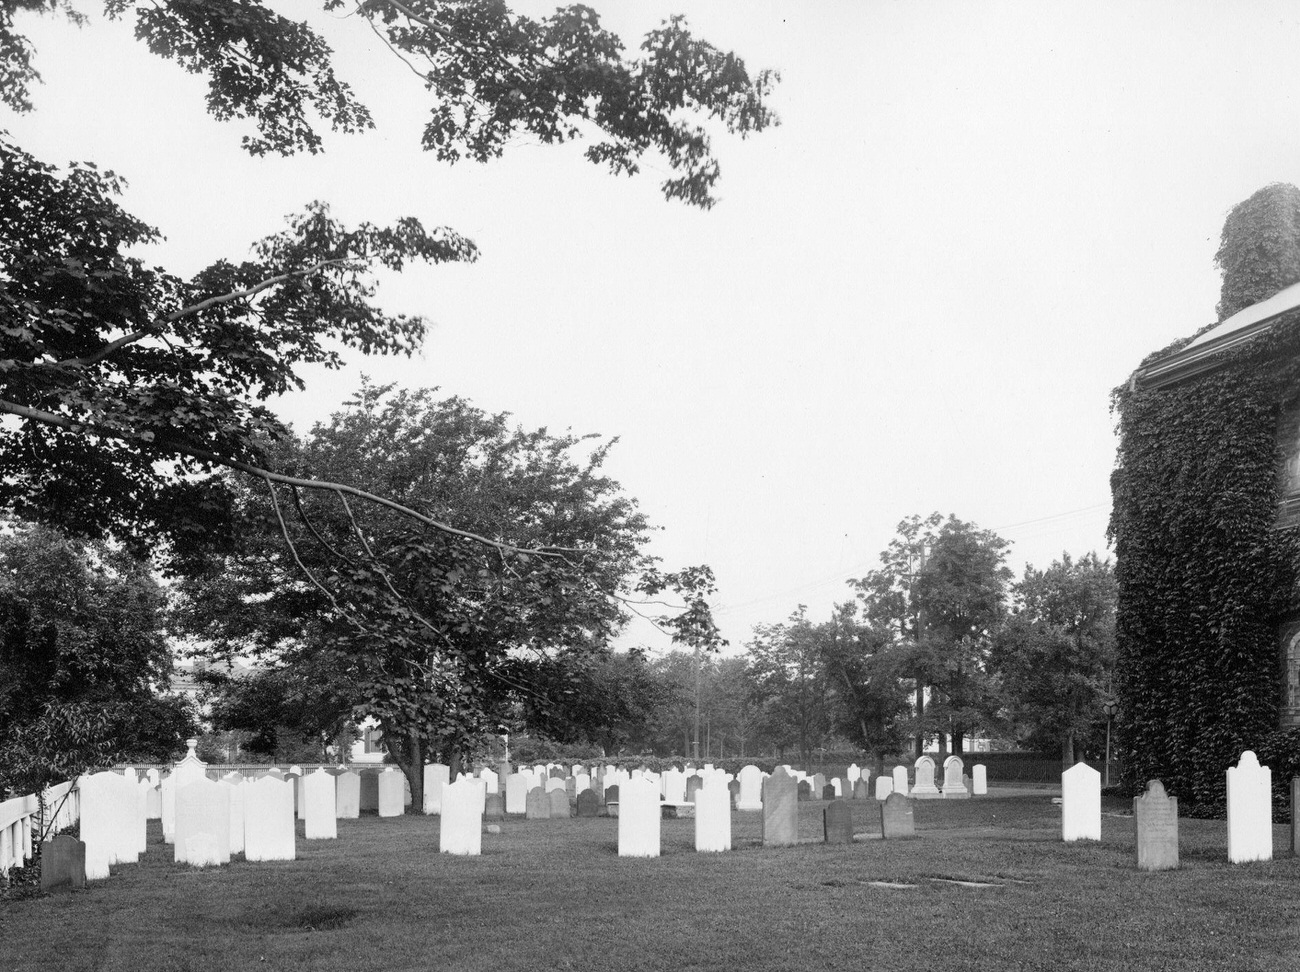 Cemetery At Flatbush Dutch Reformed Church On Flatbush And Church Avenues, Brooklyn, 1895